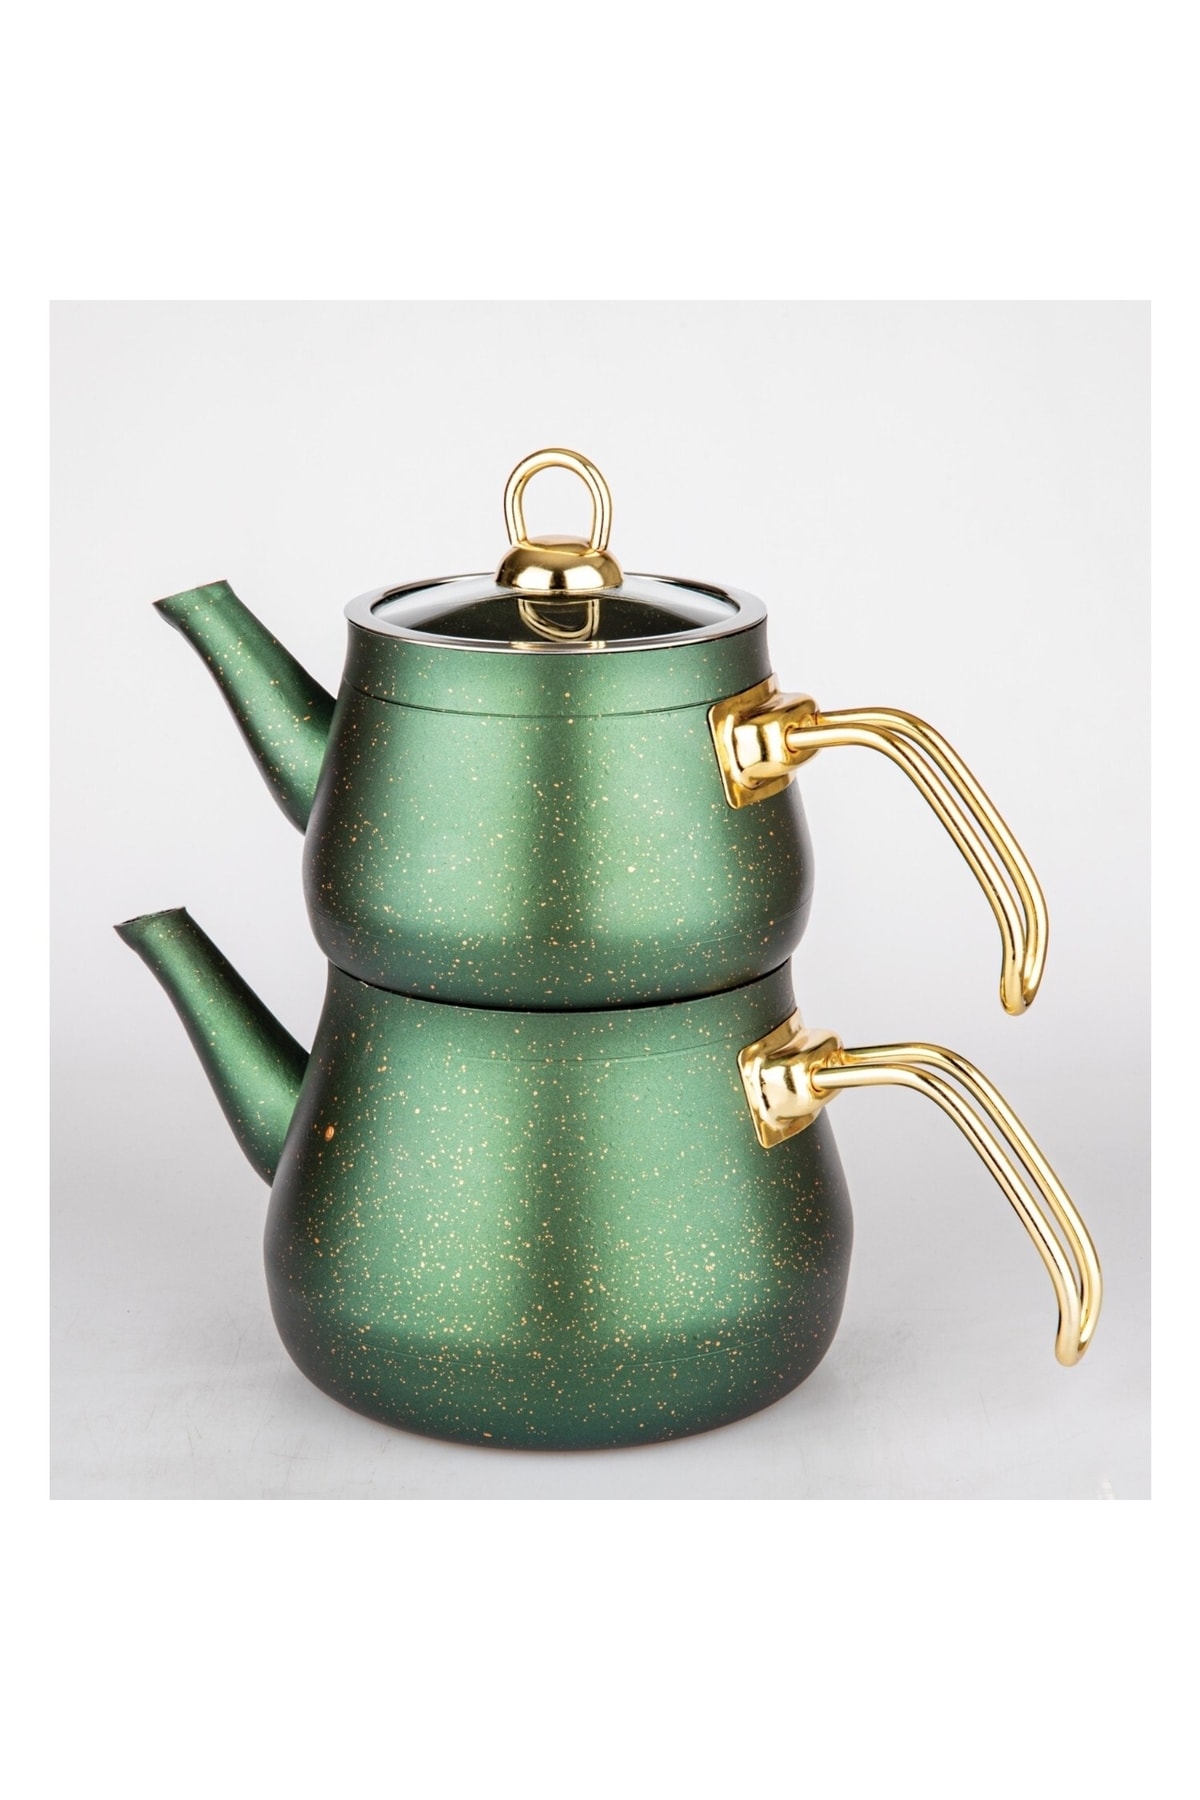 MELYET Granit Çaydanlık Takımı Paslanmaz Sağlam Gold Metal Kulplu Yeşil Cam Kapaklı Çaydanlık